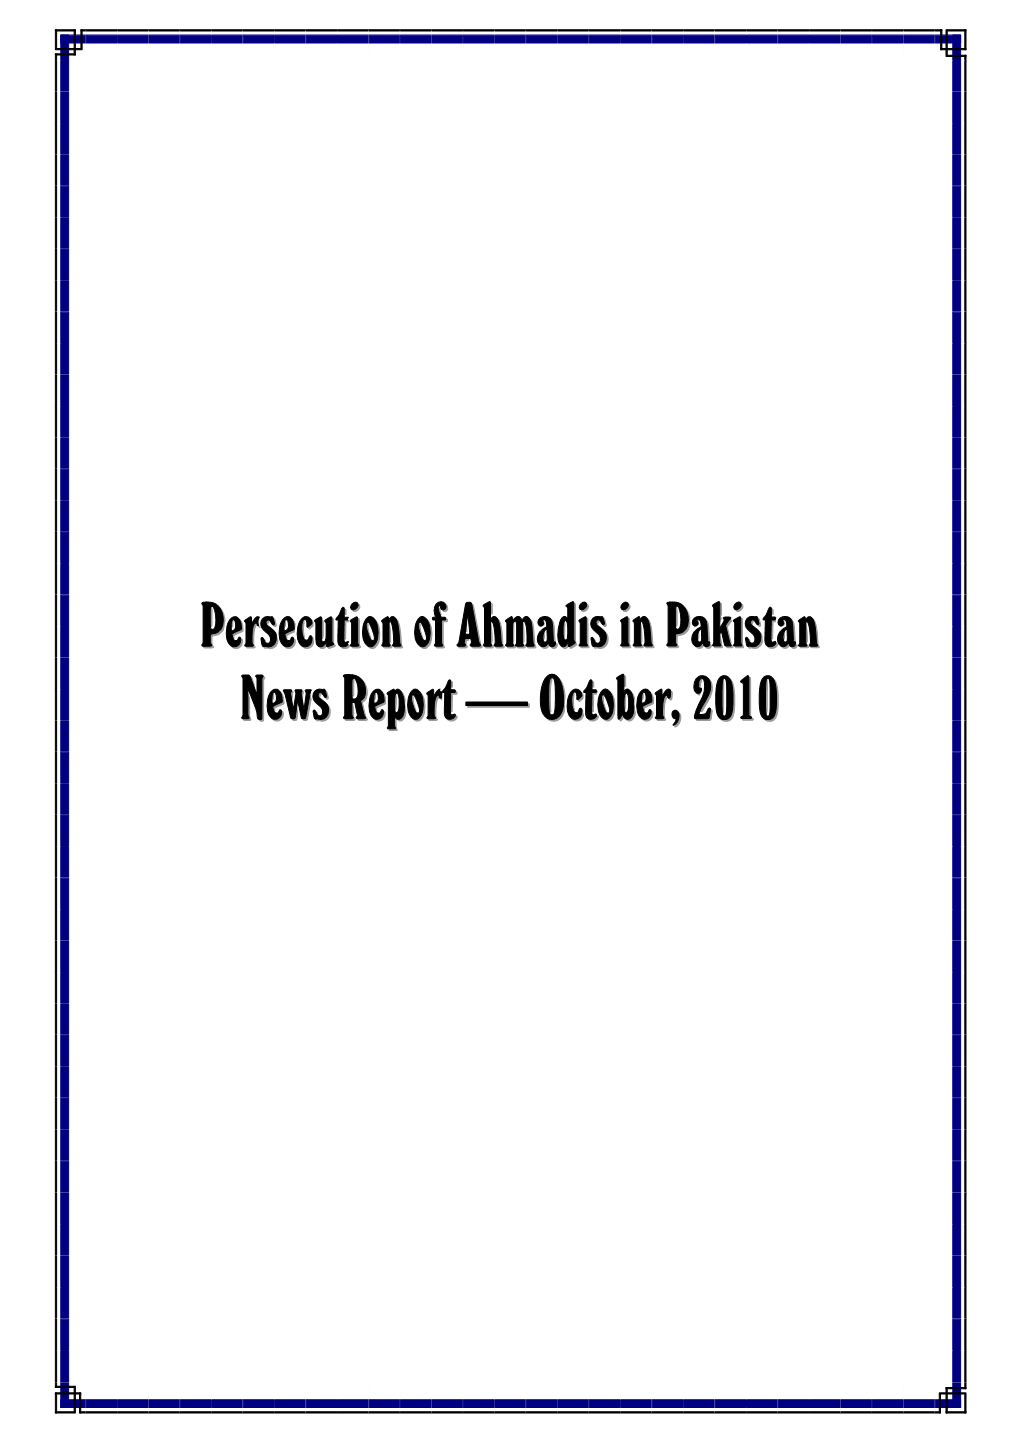 Monthly Newsreport - October, 2010